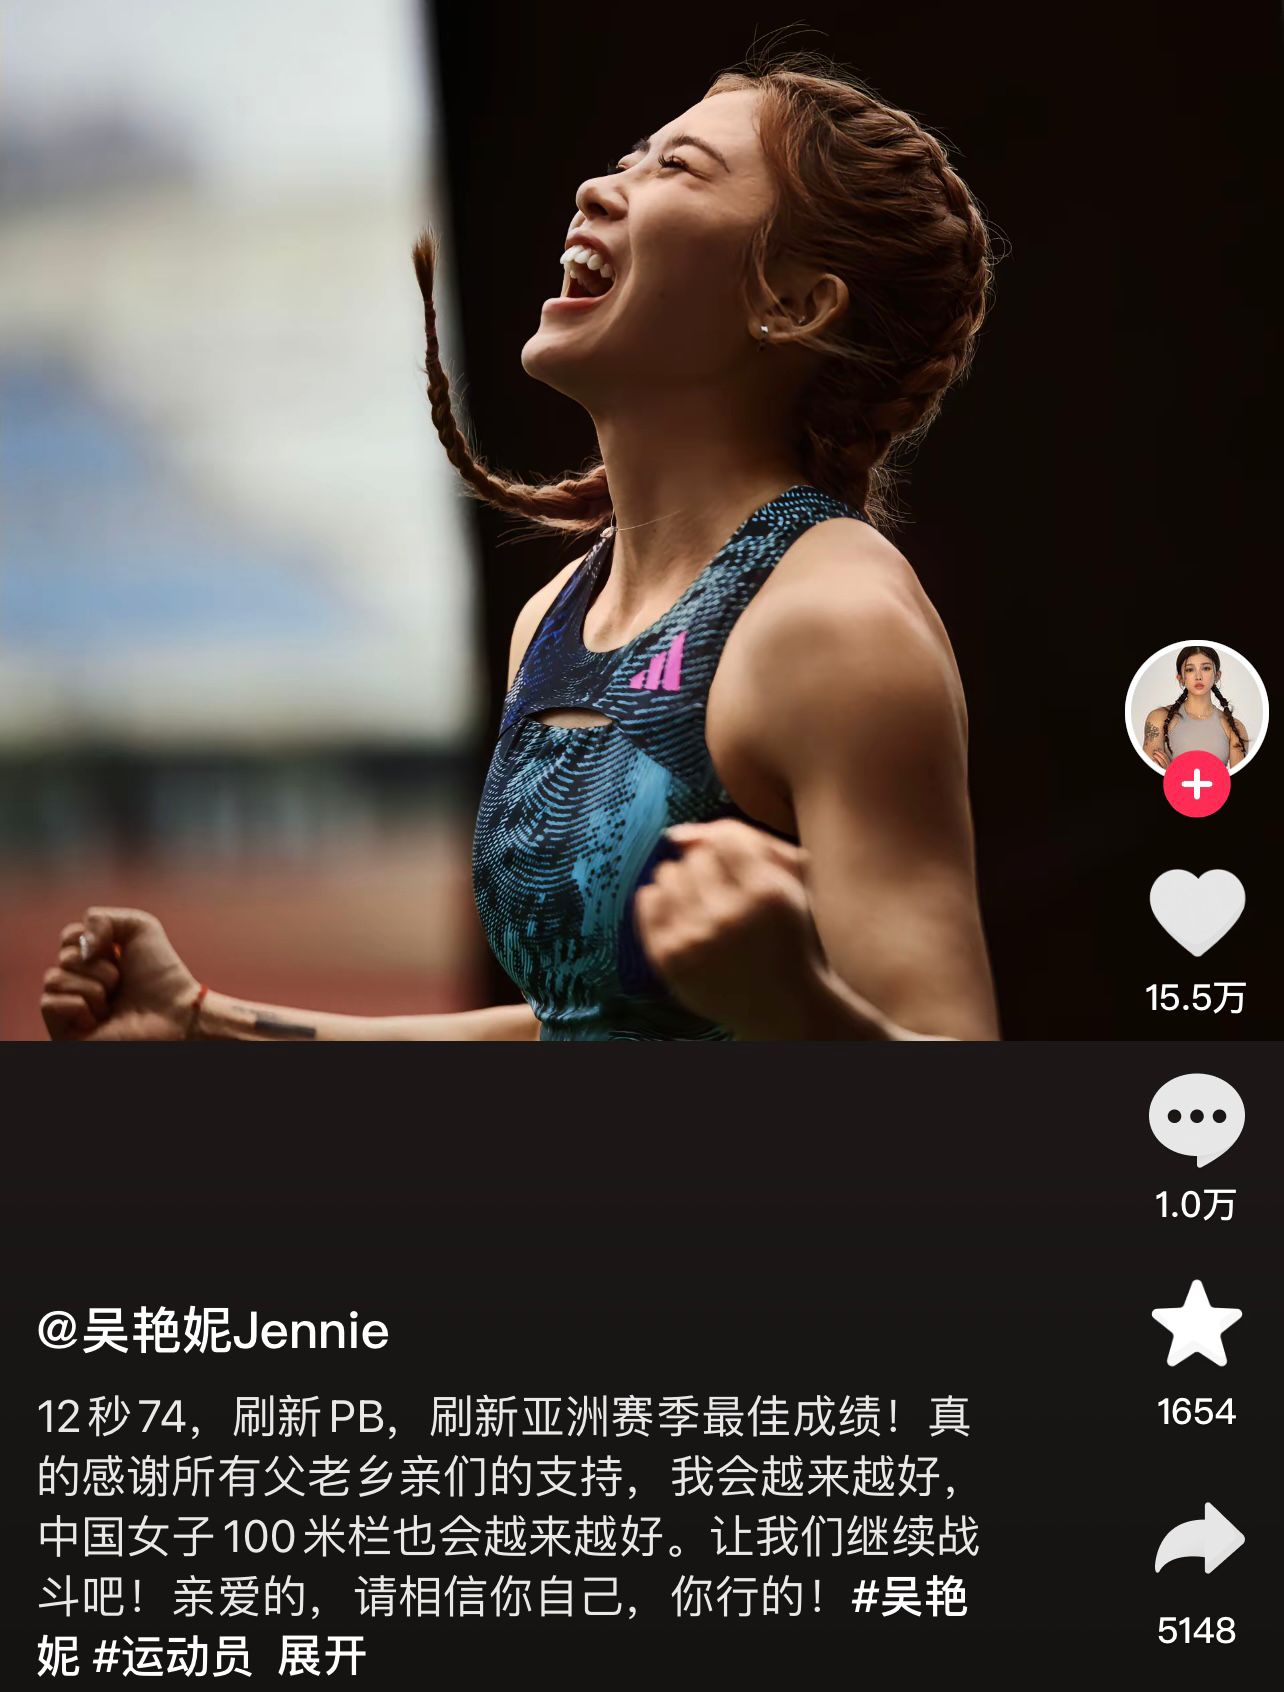 吴燕妮：感谢大家的支持中国女子百米栏会越来越好